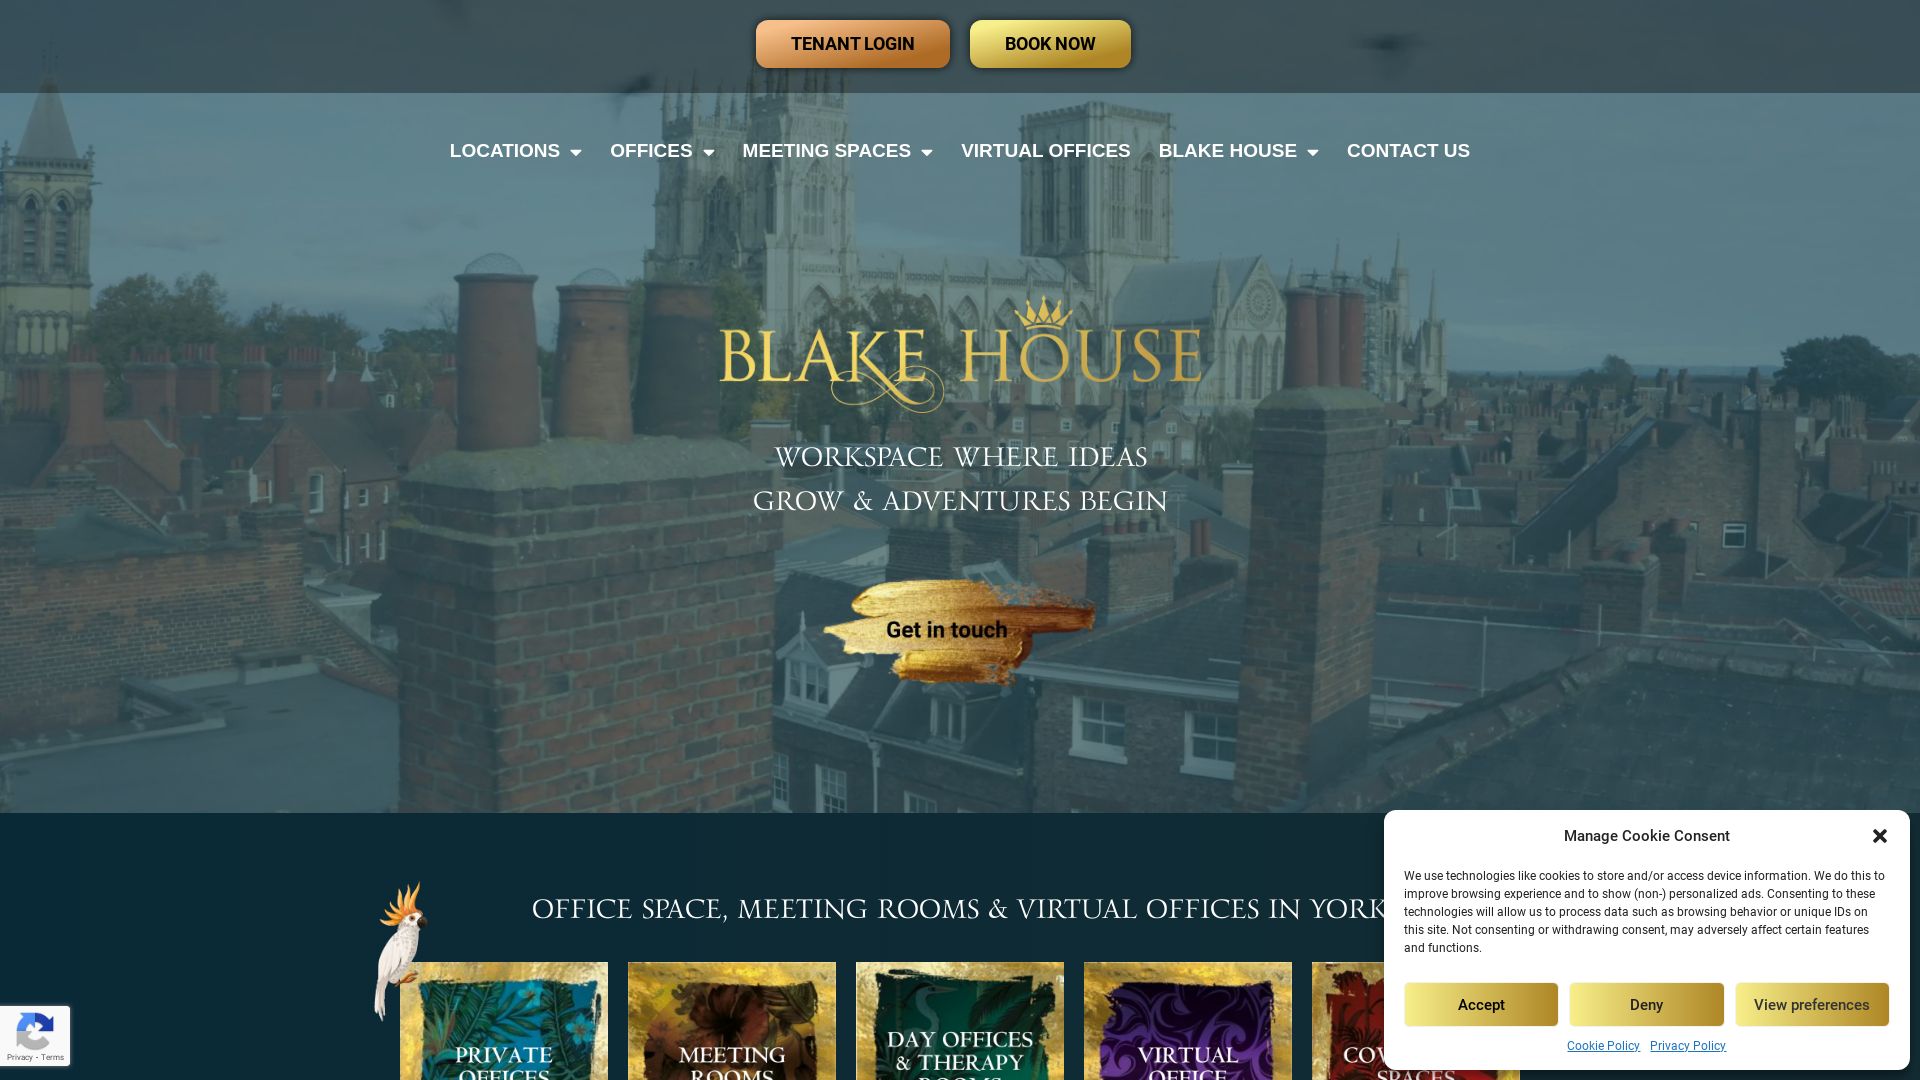 État du site web blakehouse.co.uk est   EN LIGNE